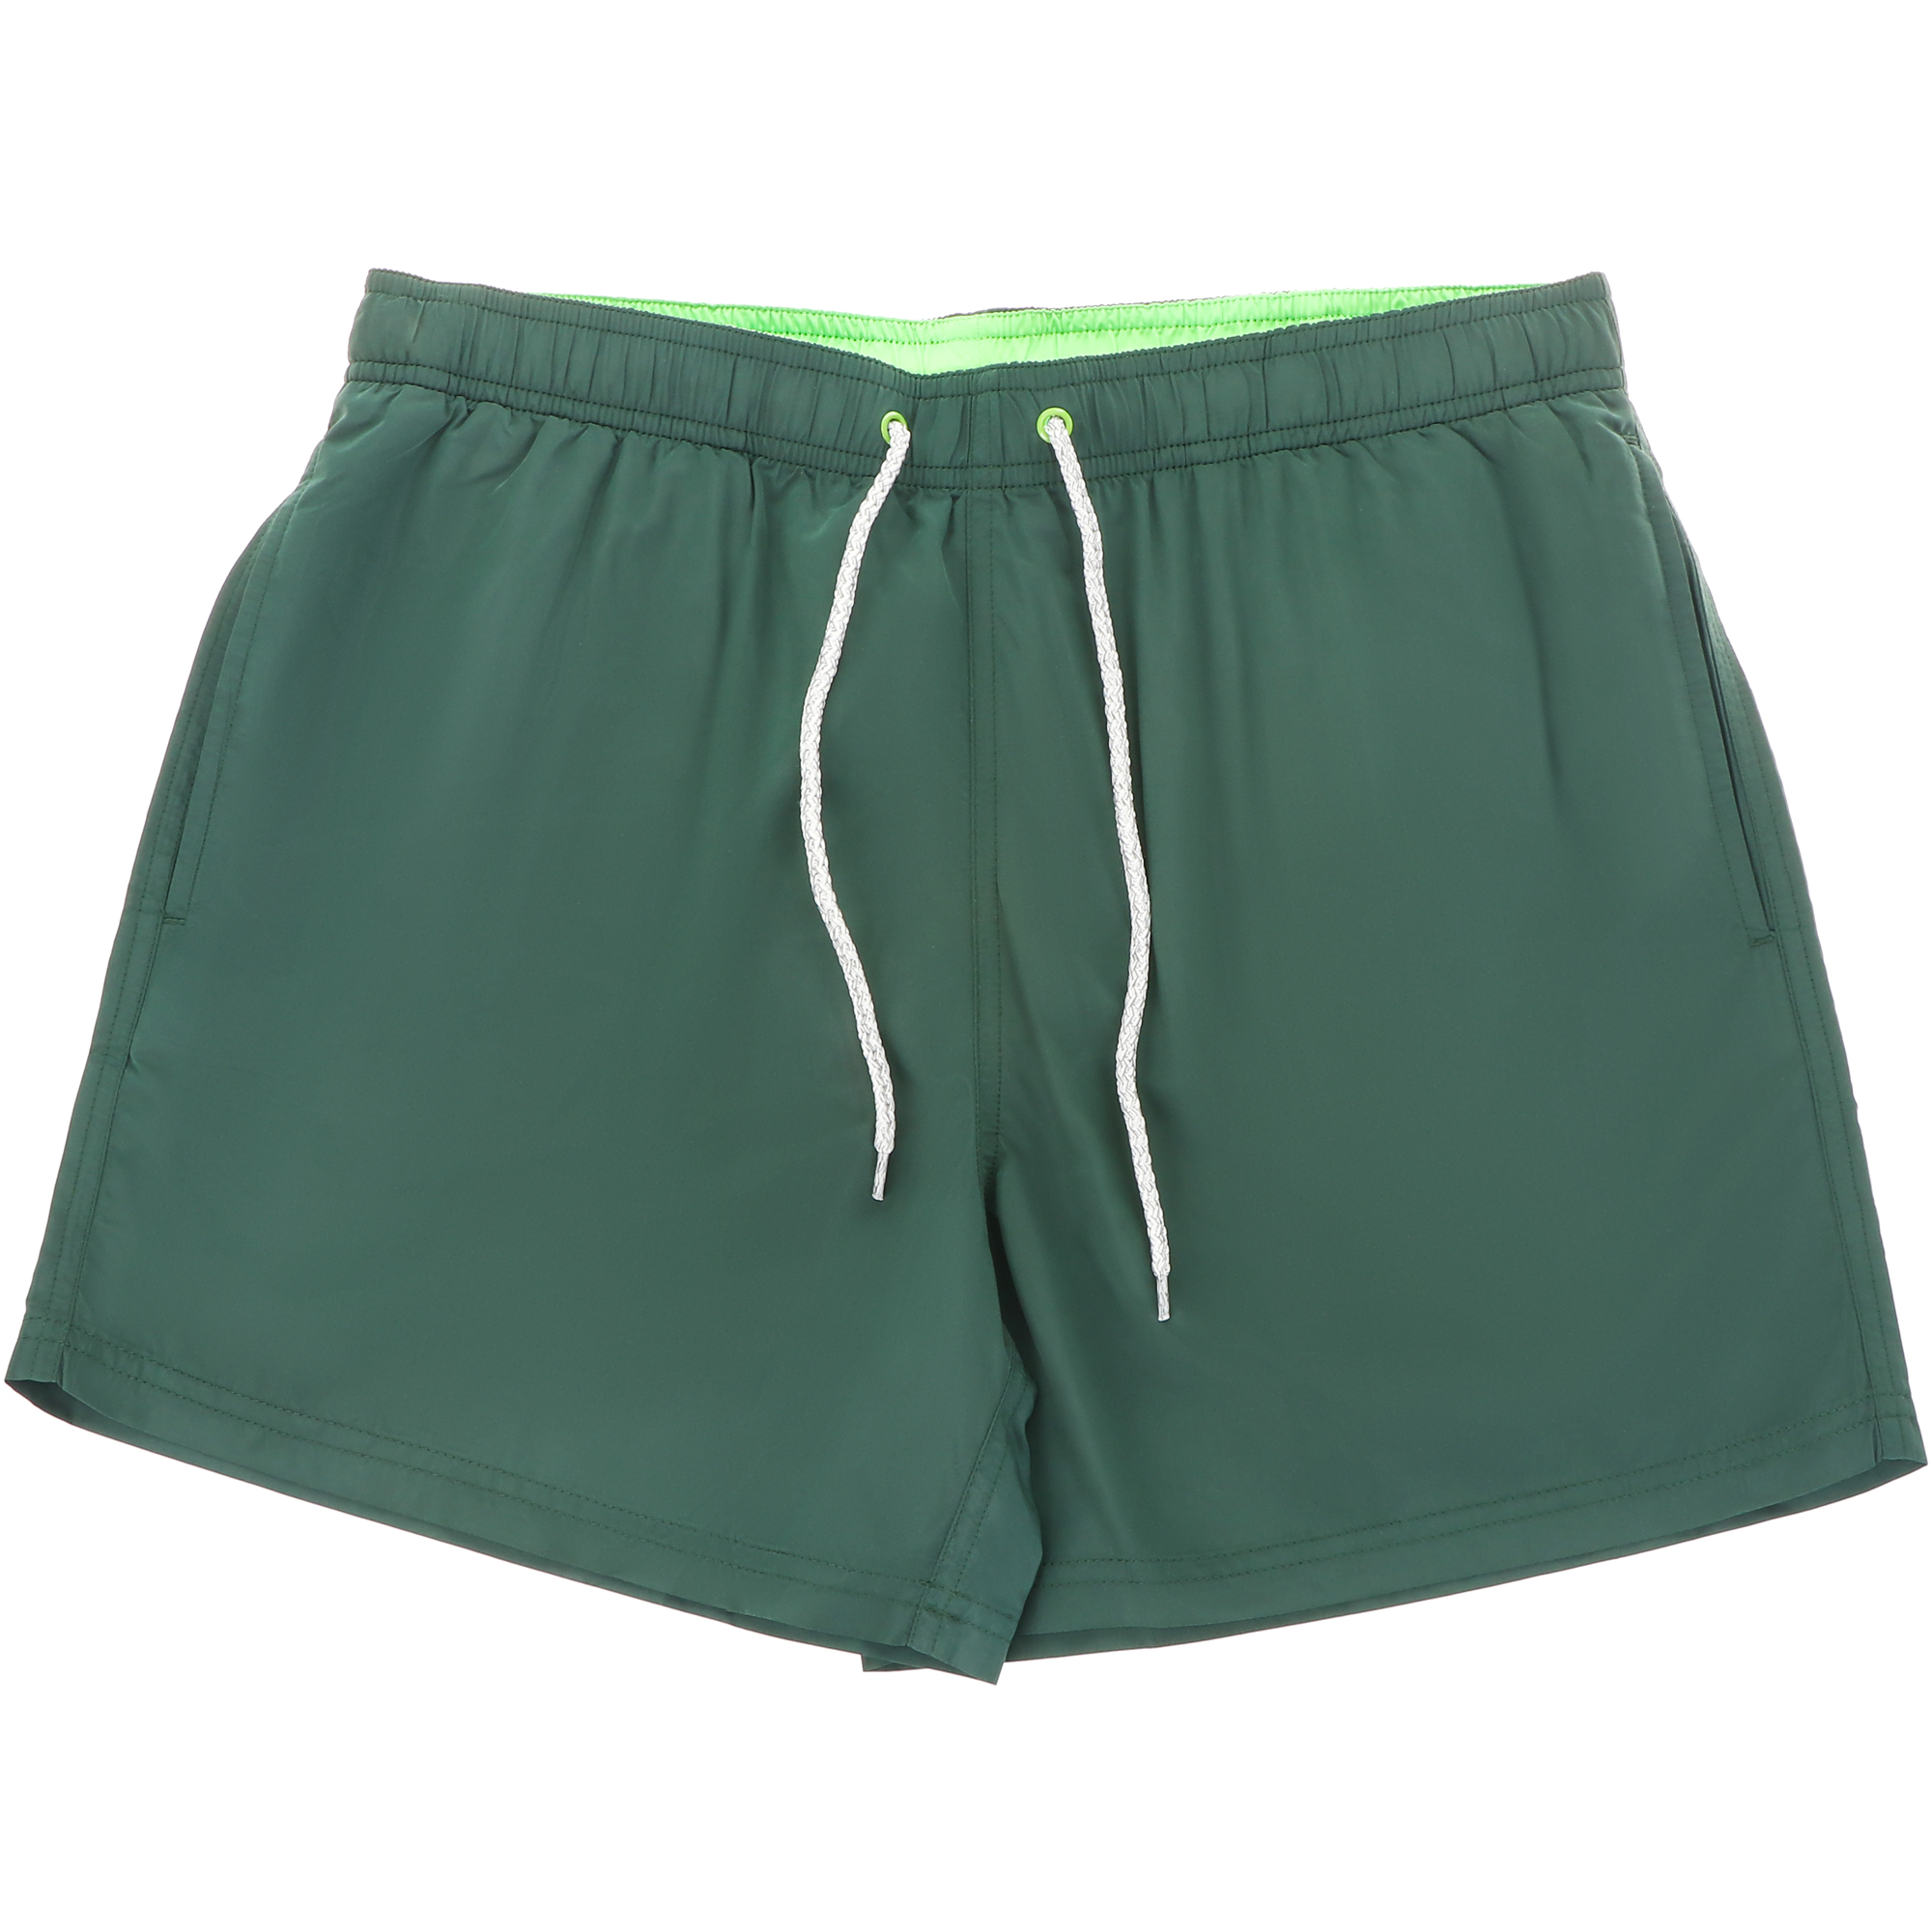 Мужские пляжные шорты Joyord зелёные, цвет зелёный, размер XXXL - фото 1